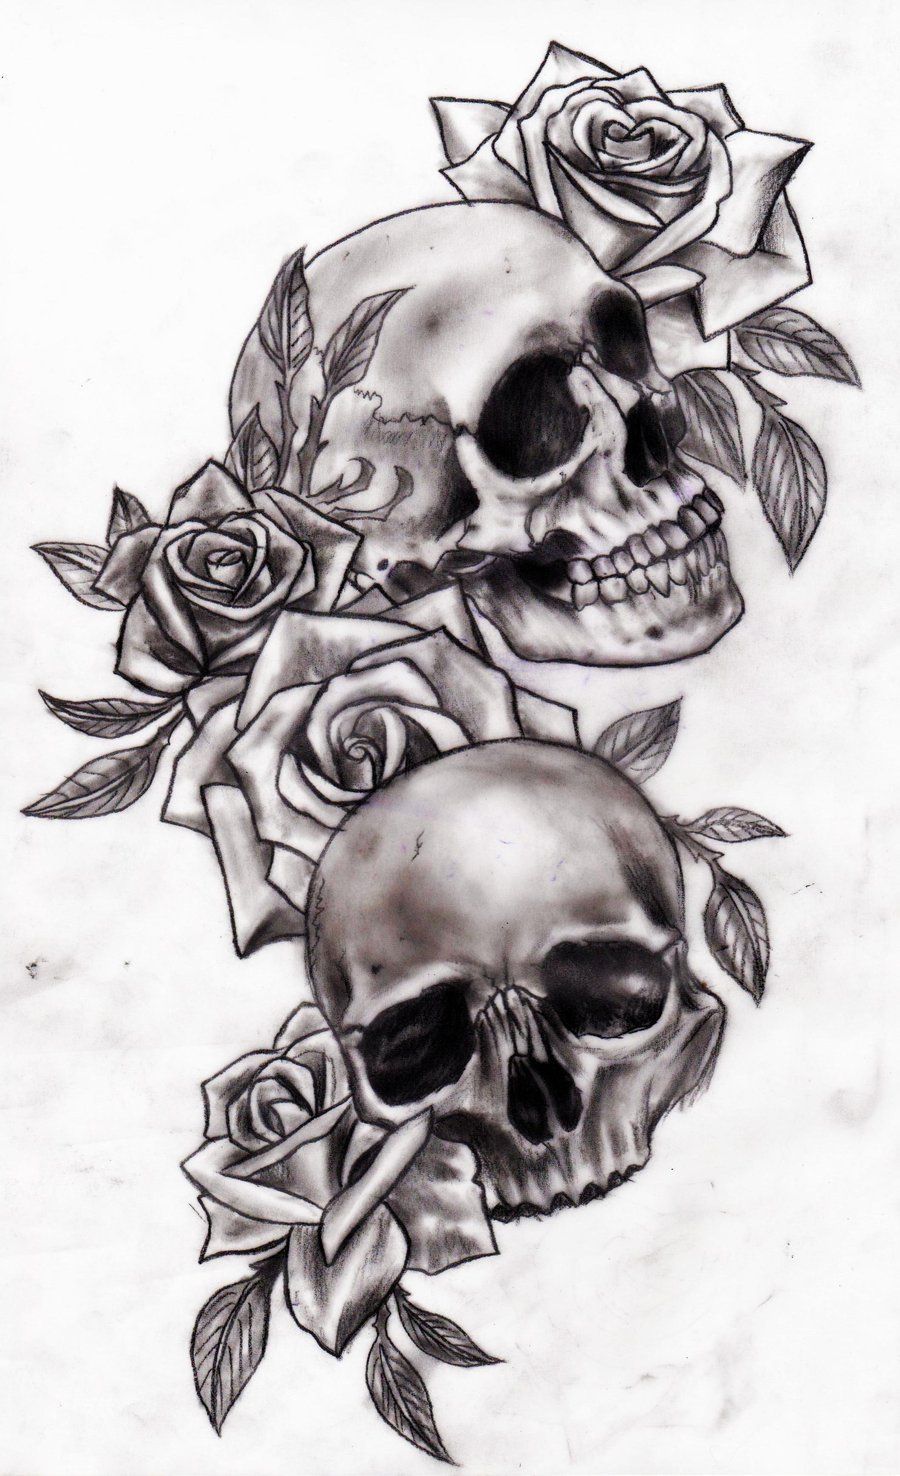 Skull and roses by Slabzzz.deviantart.com on @deviantART -   23 skull tattoo ideas